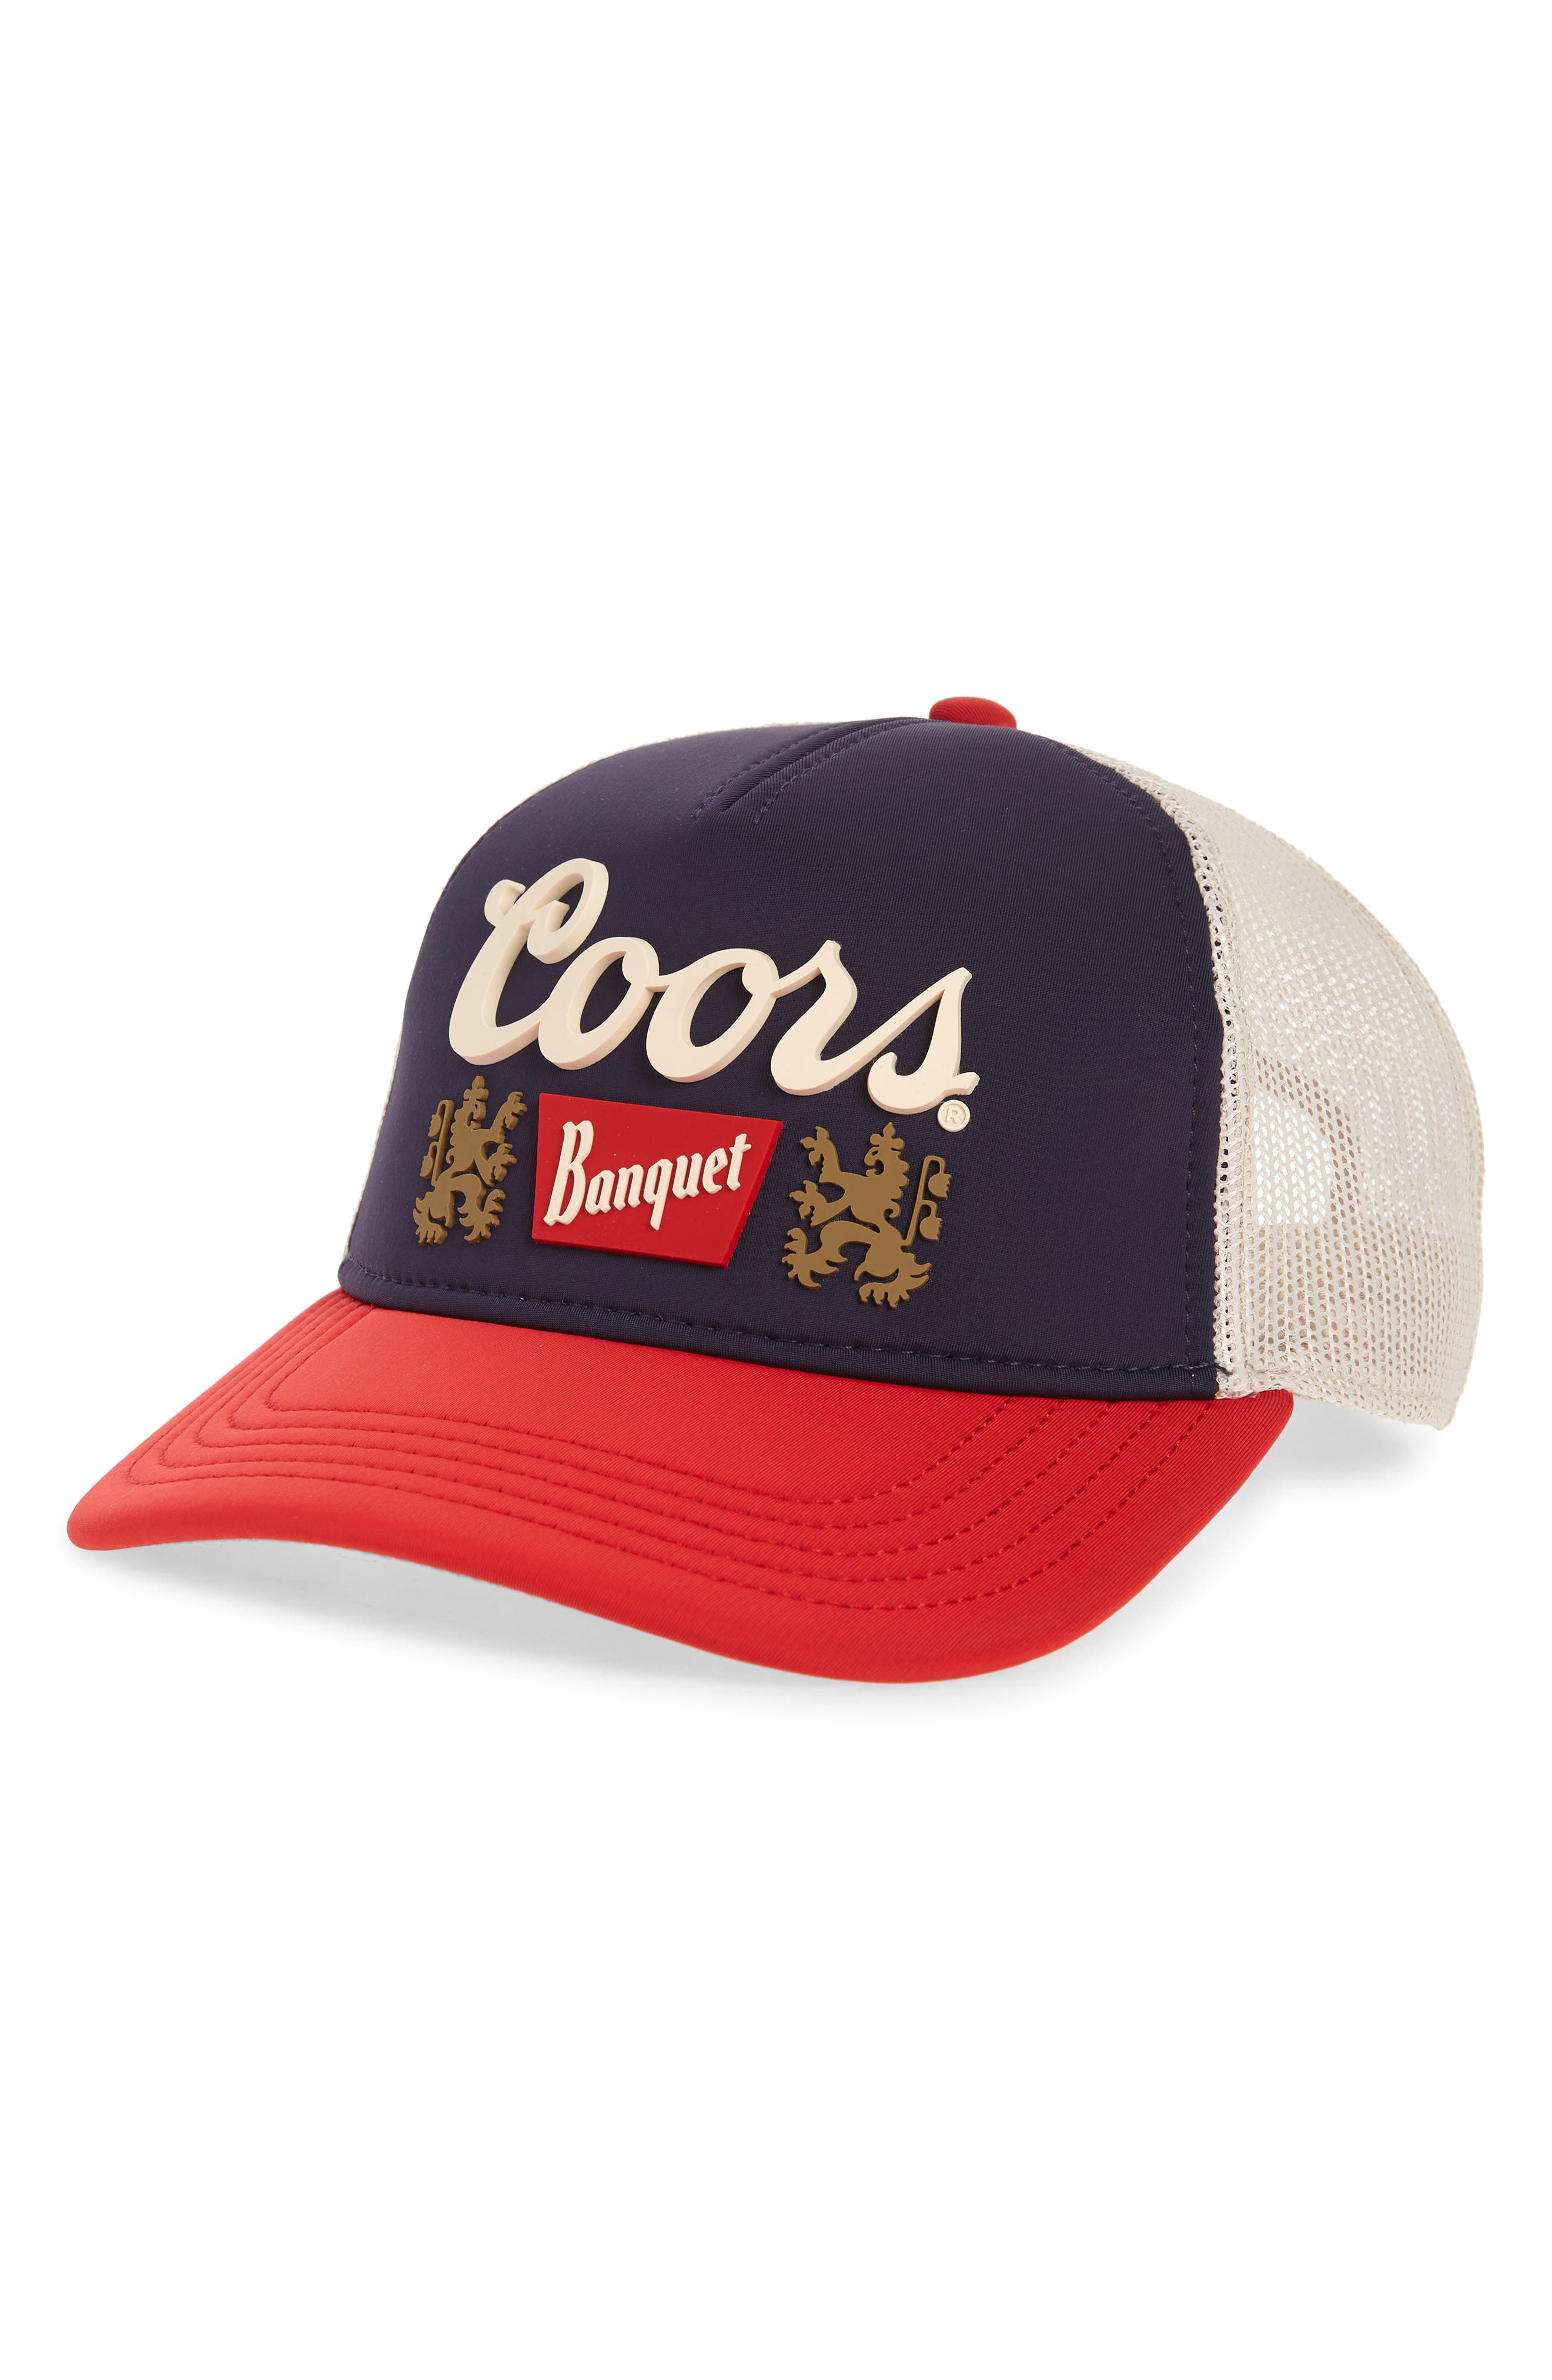 Lone Star Beer Navy Hat American Needle Licensed New Baseball Cap NR 